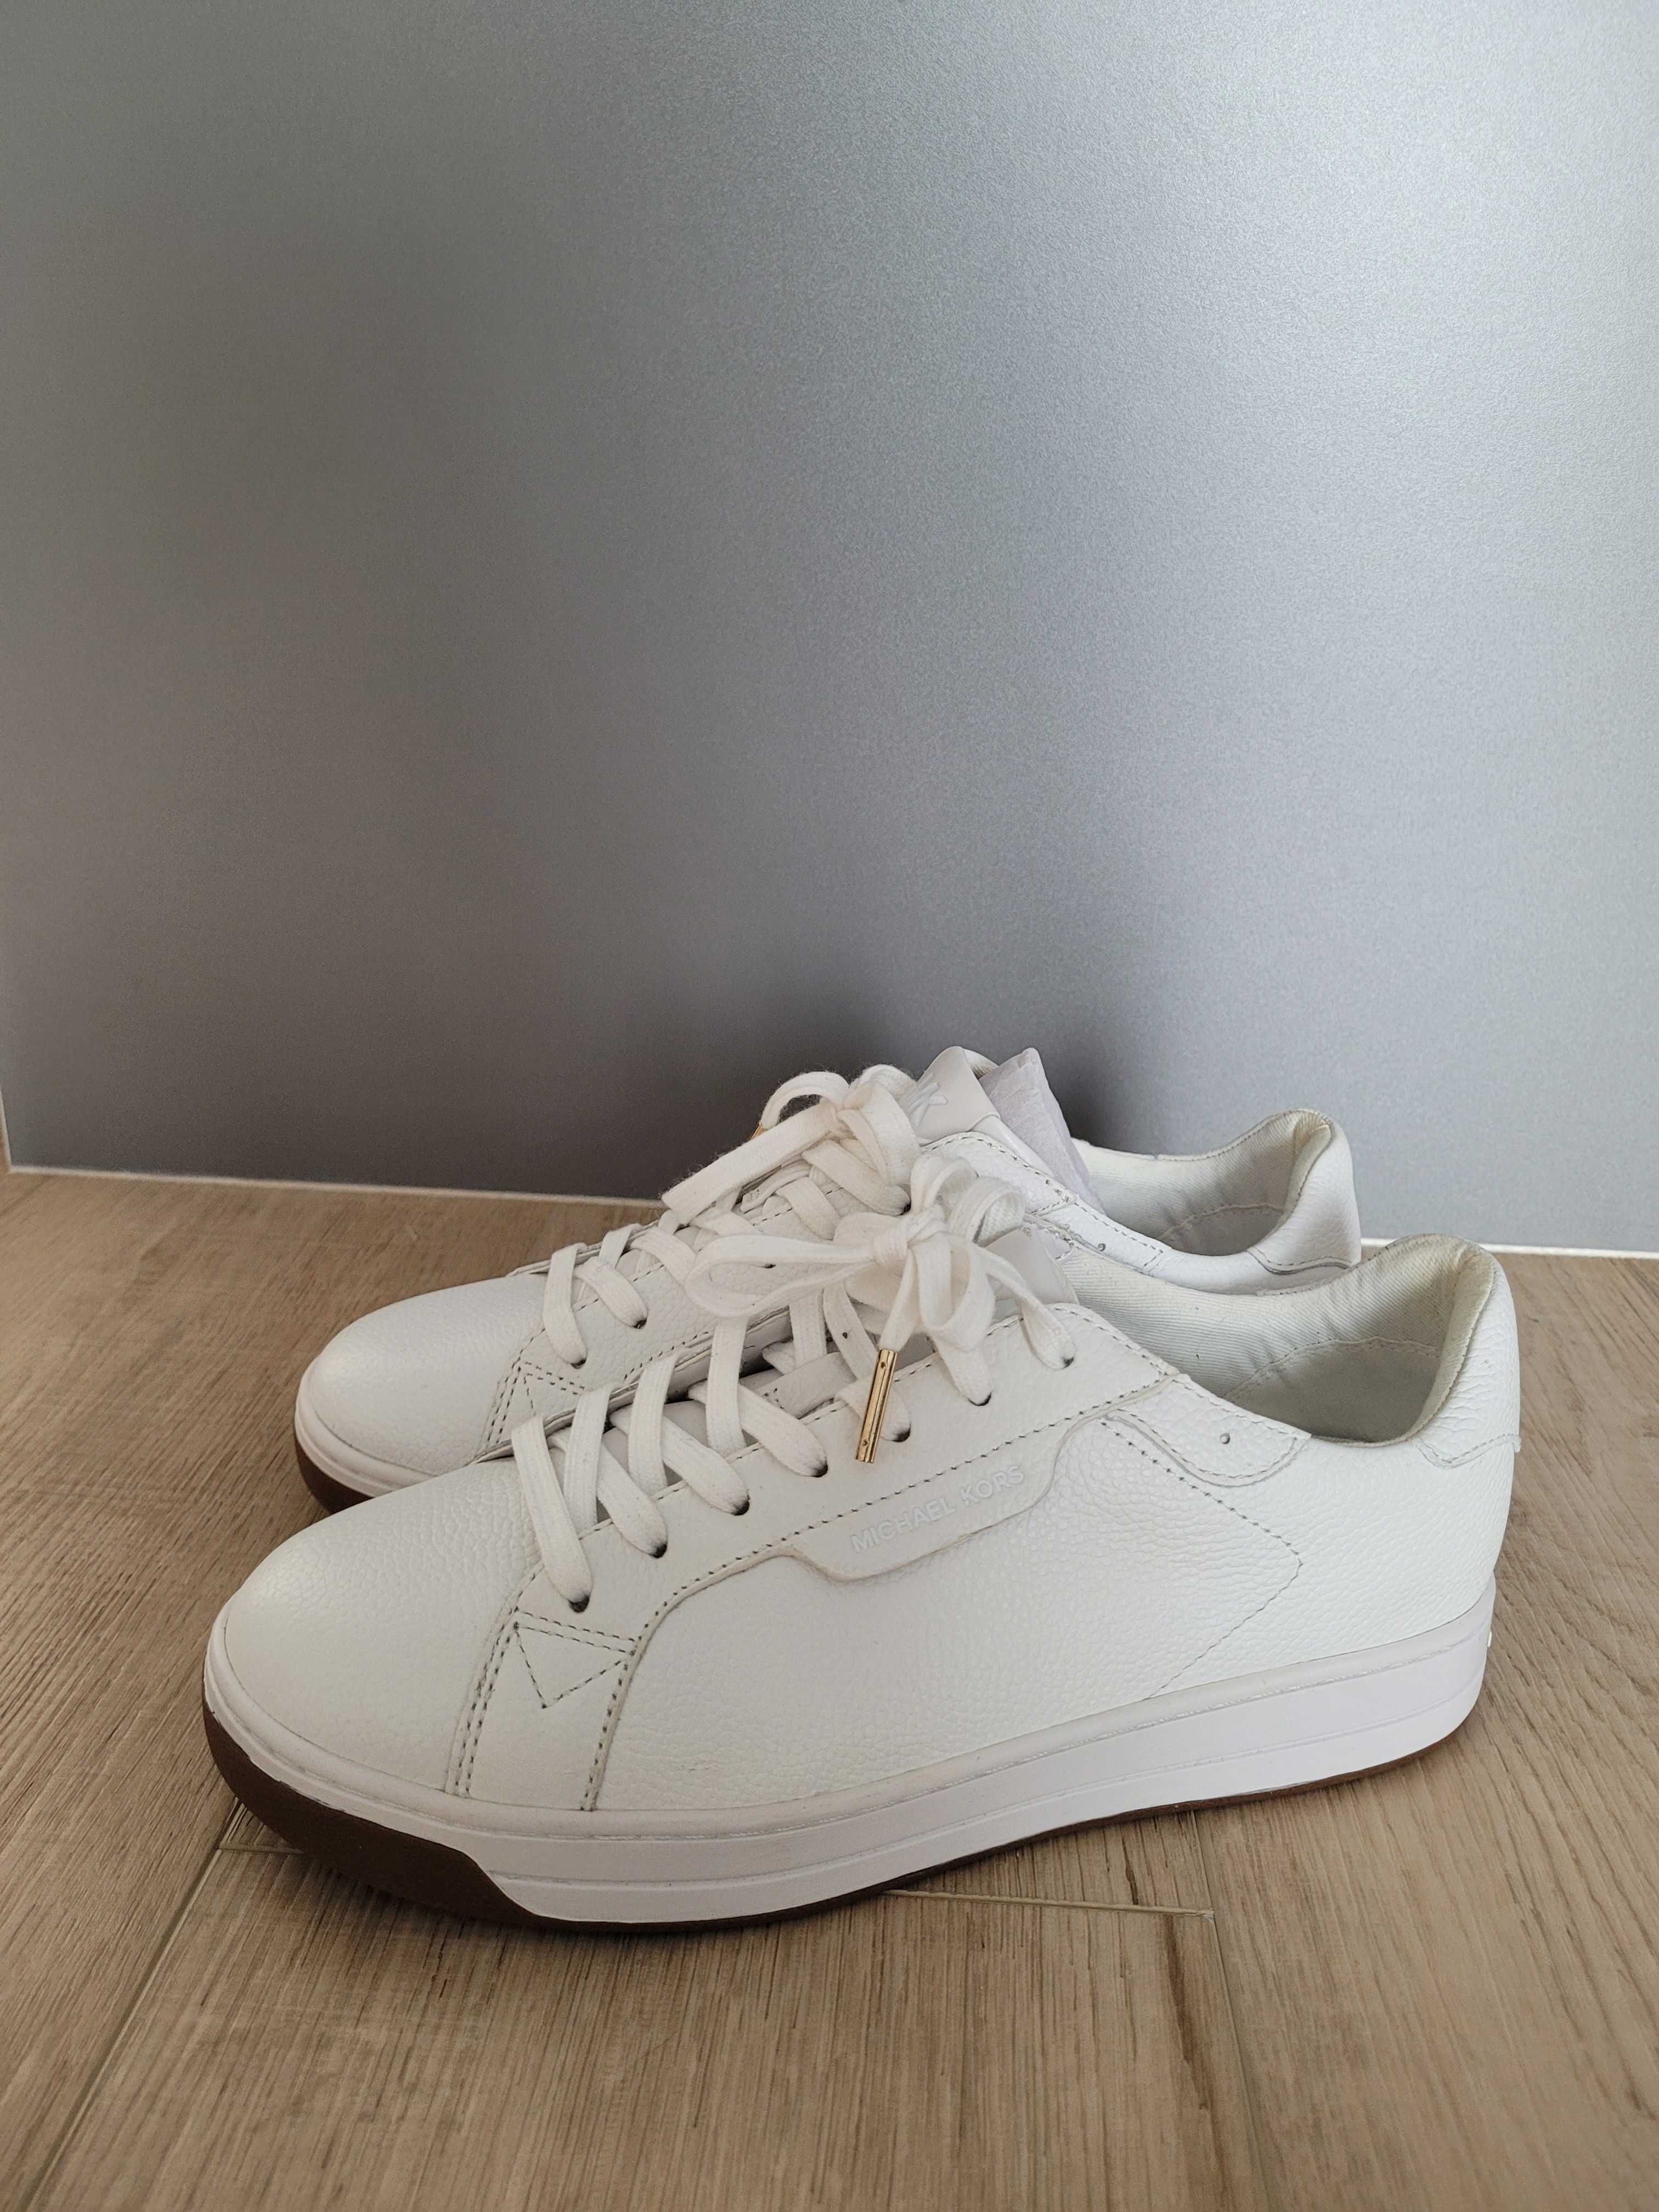 Buty Michael Kors 37,5 białe trampki sneakersy